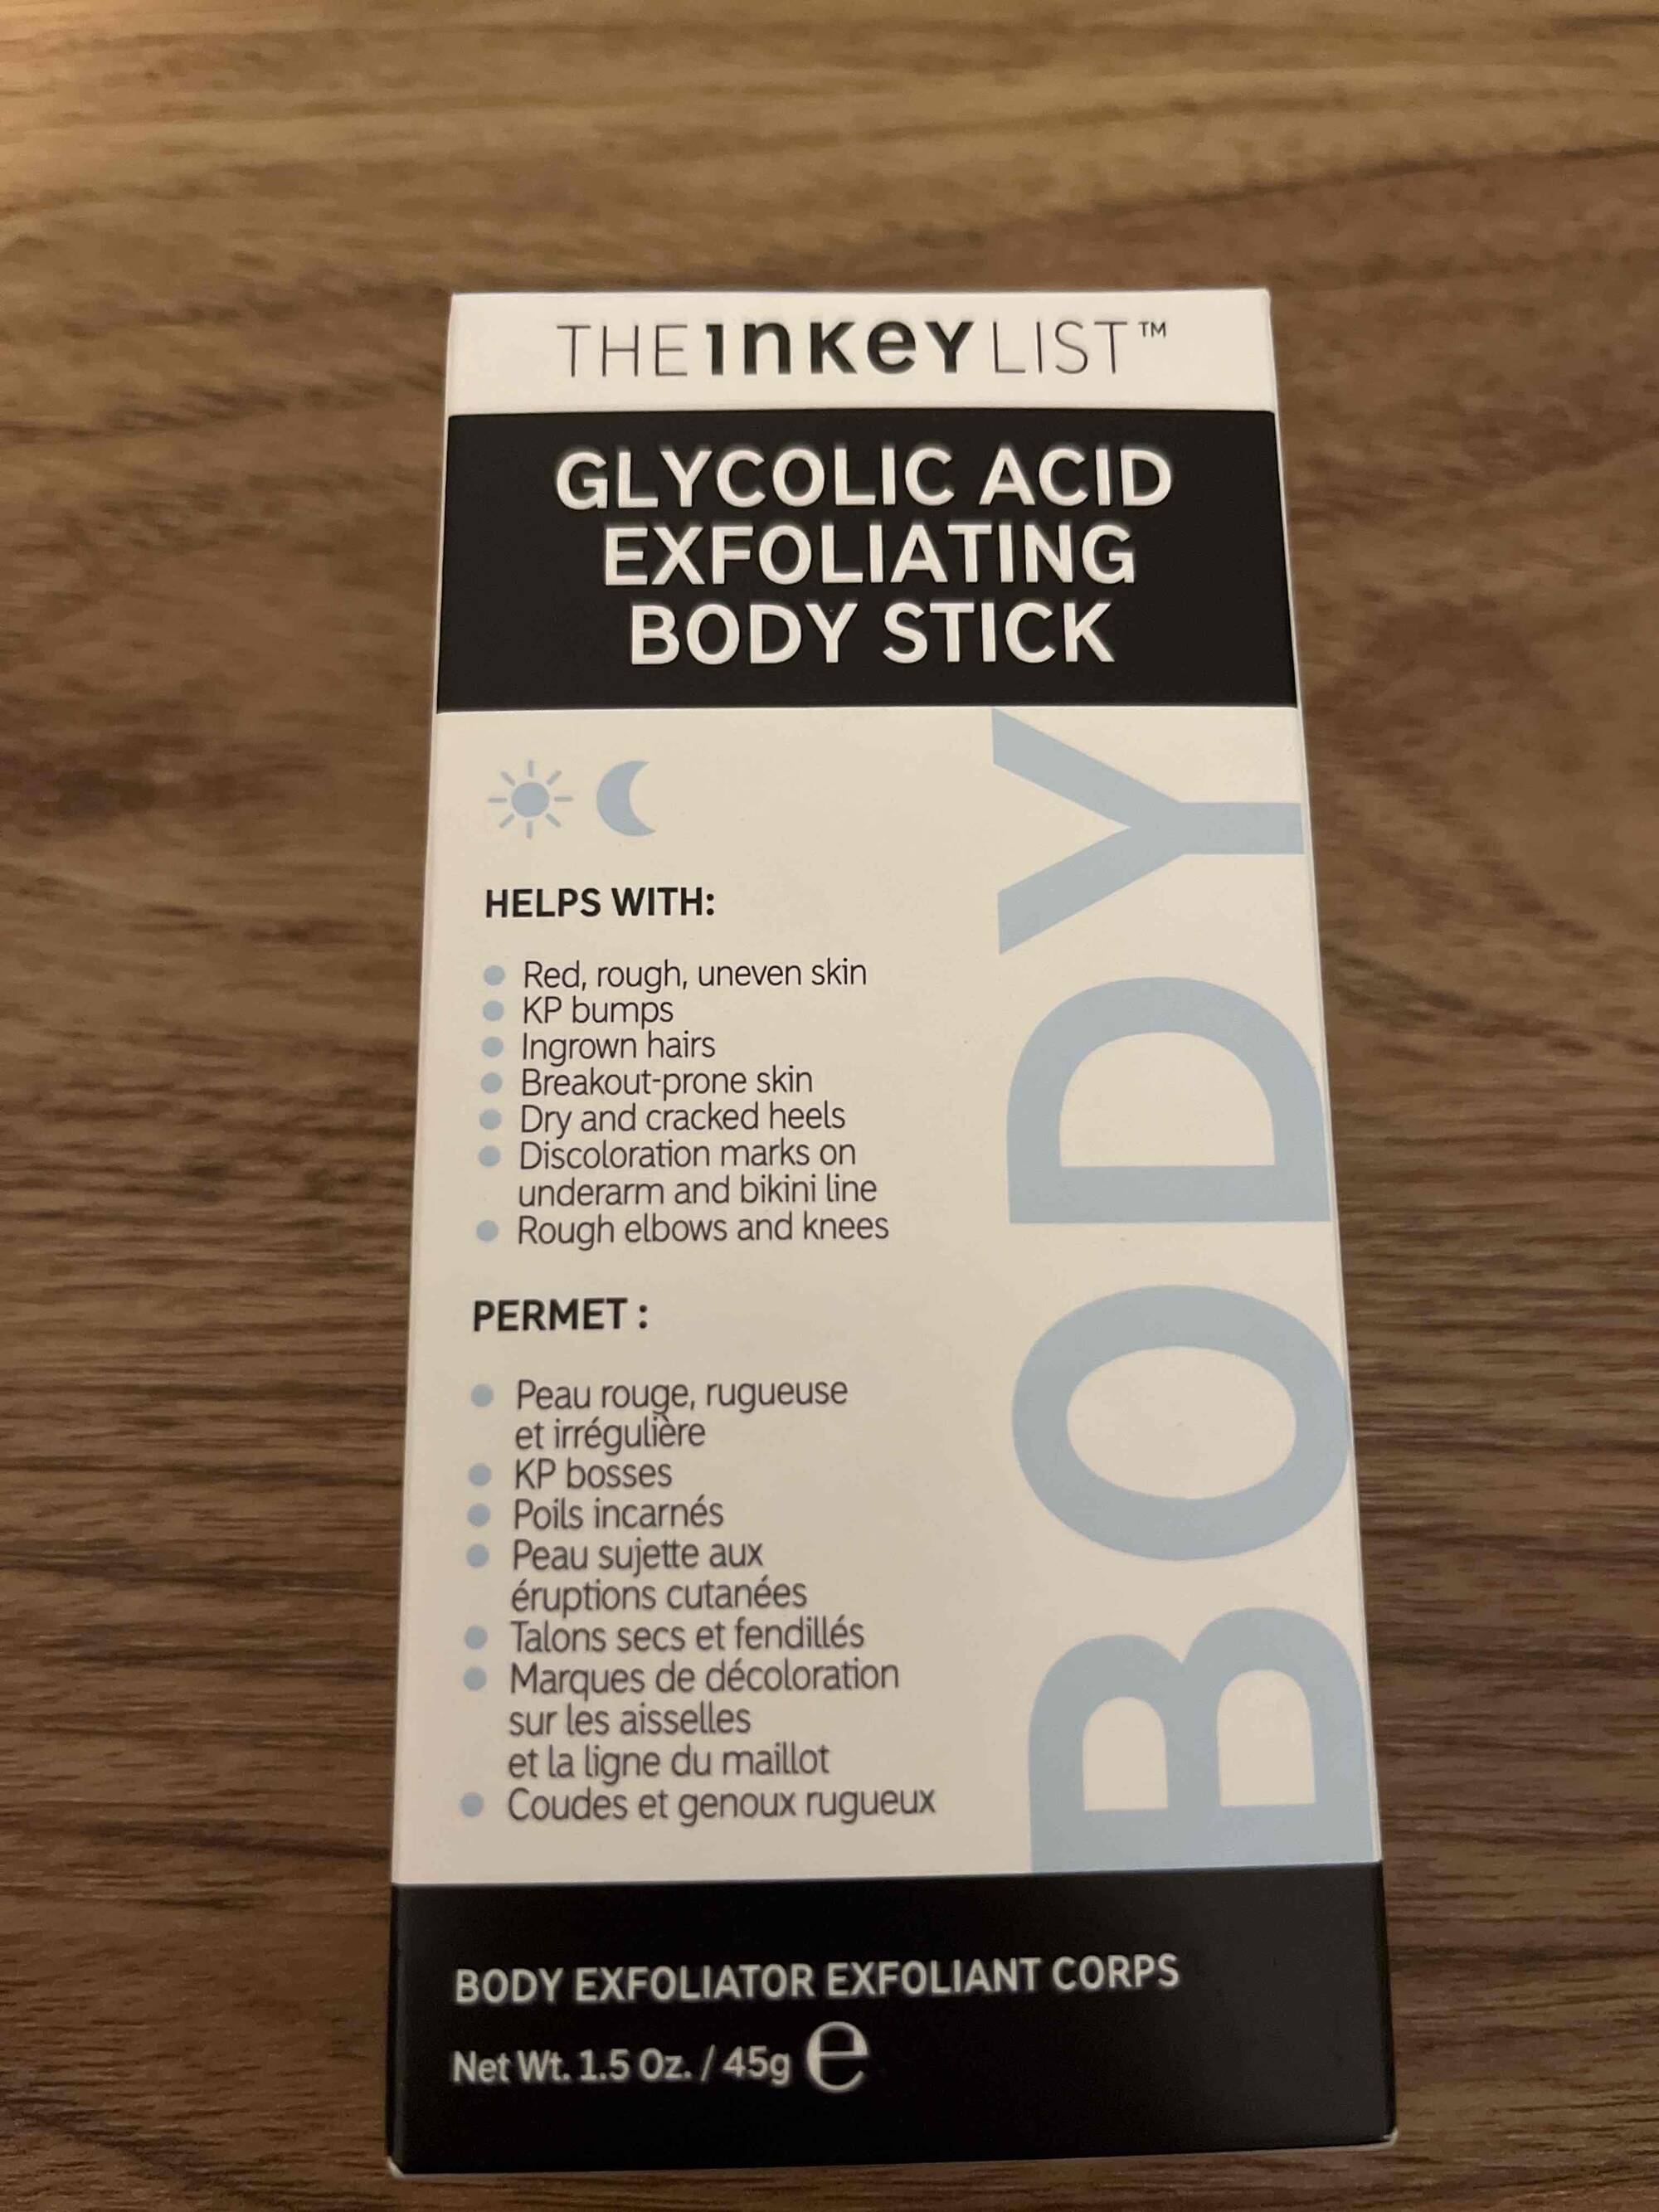 THE INKEY LIST - Glycolic acid exfoliating body stick